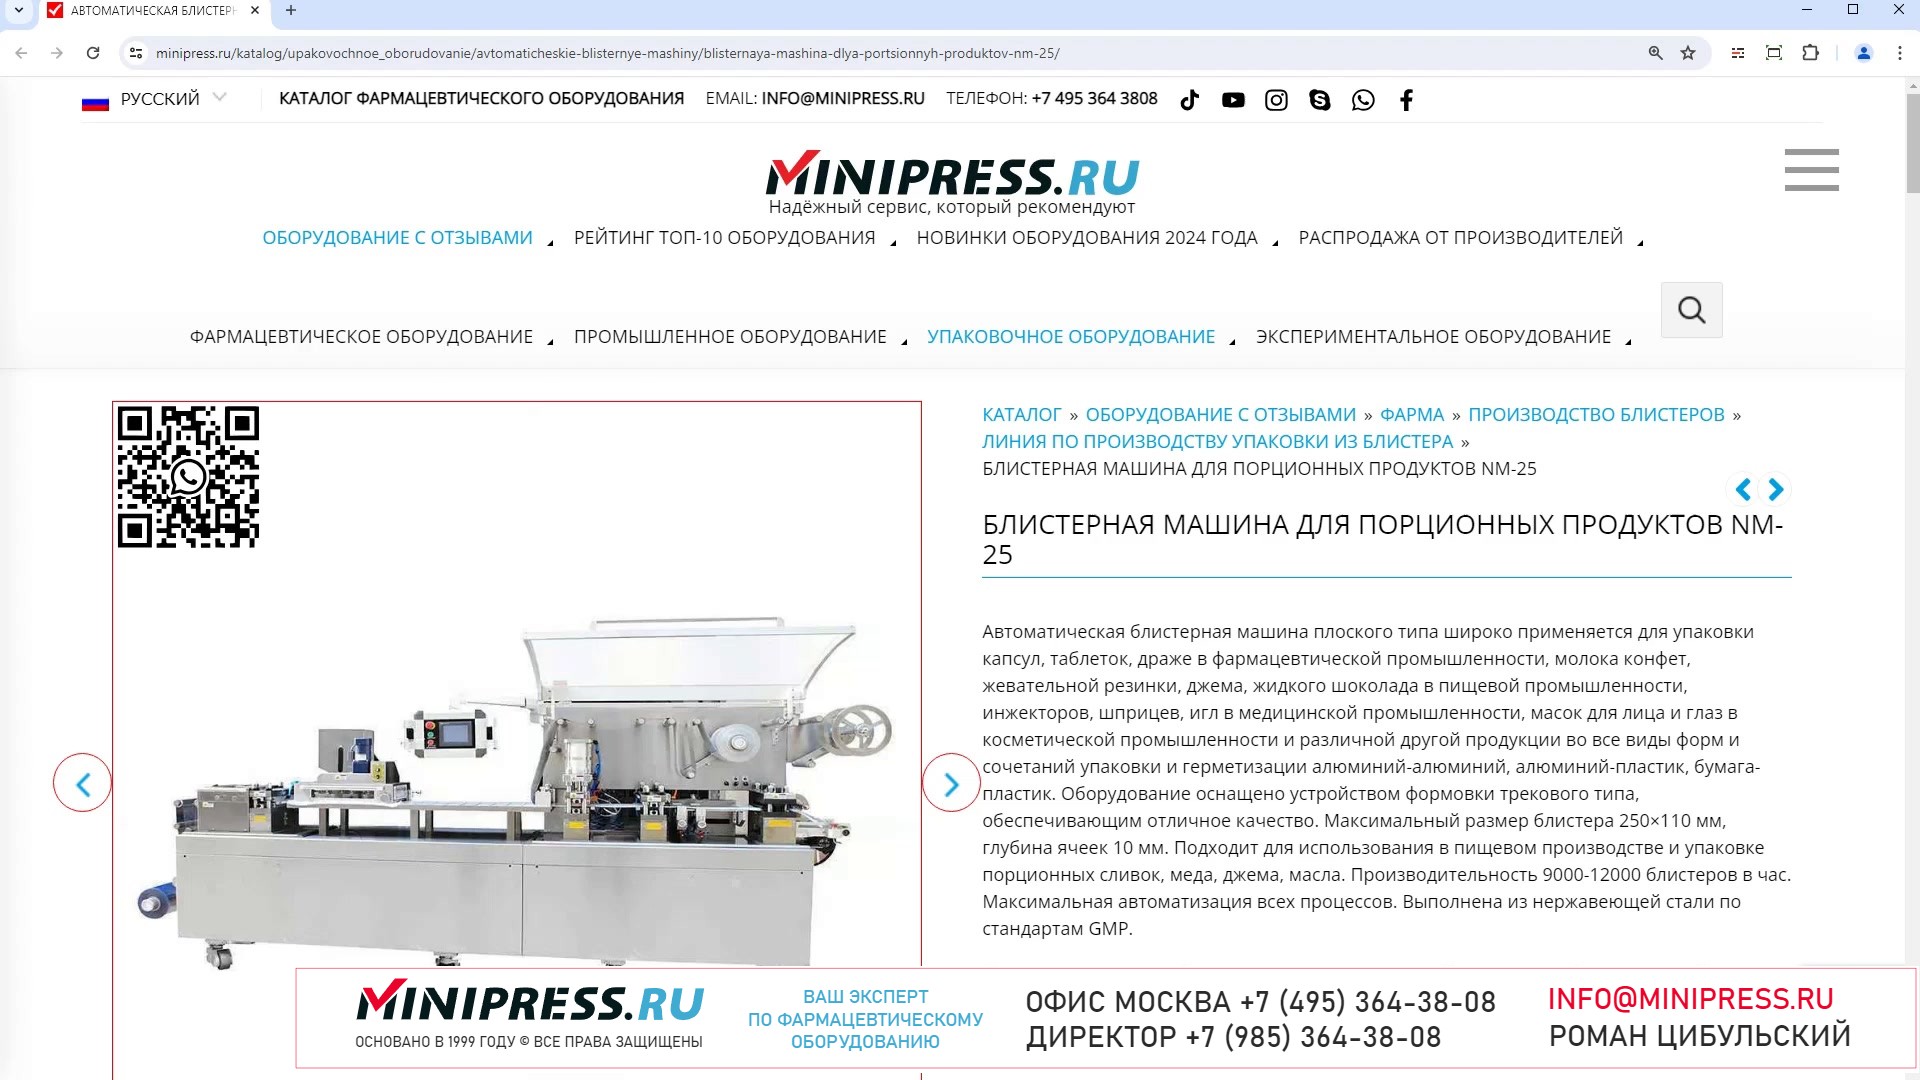 Minipress.ru Блистерная машина для порционных продуктов NM-25